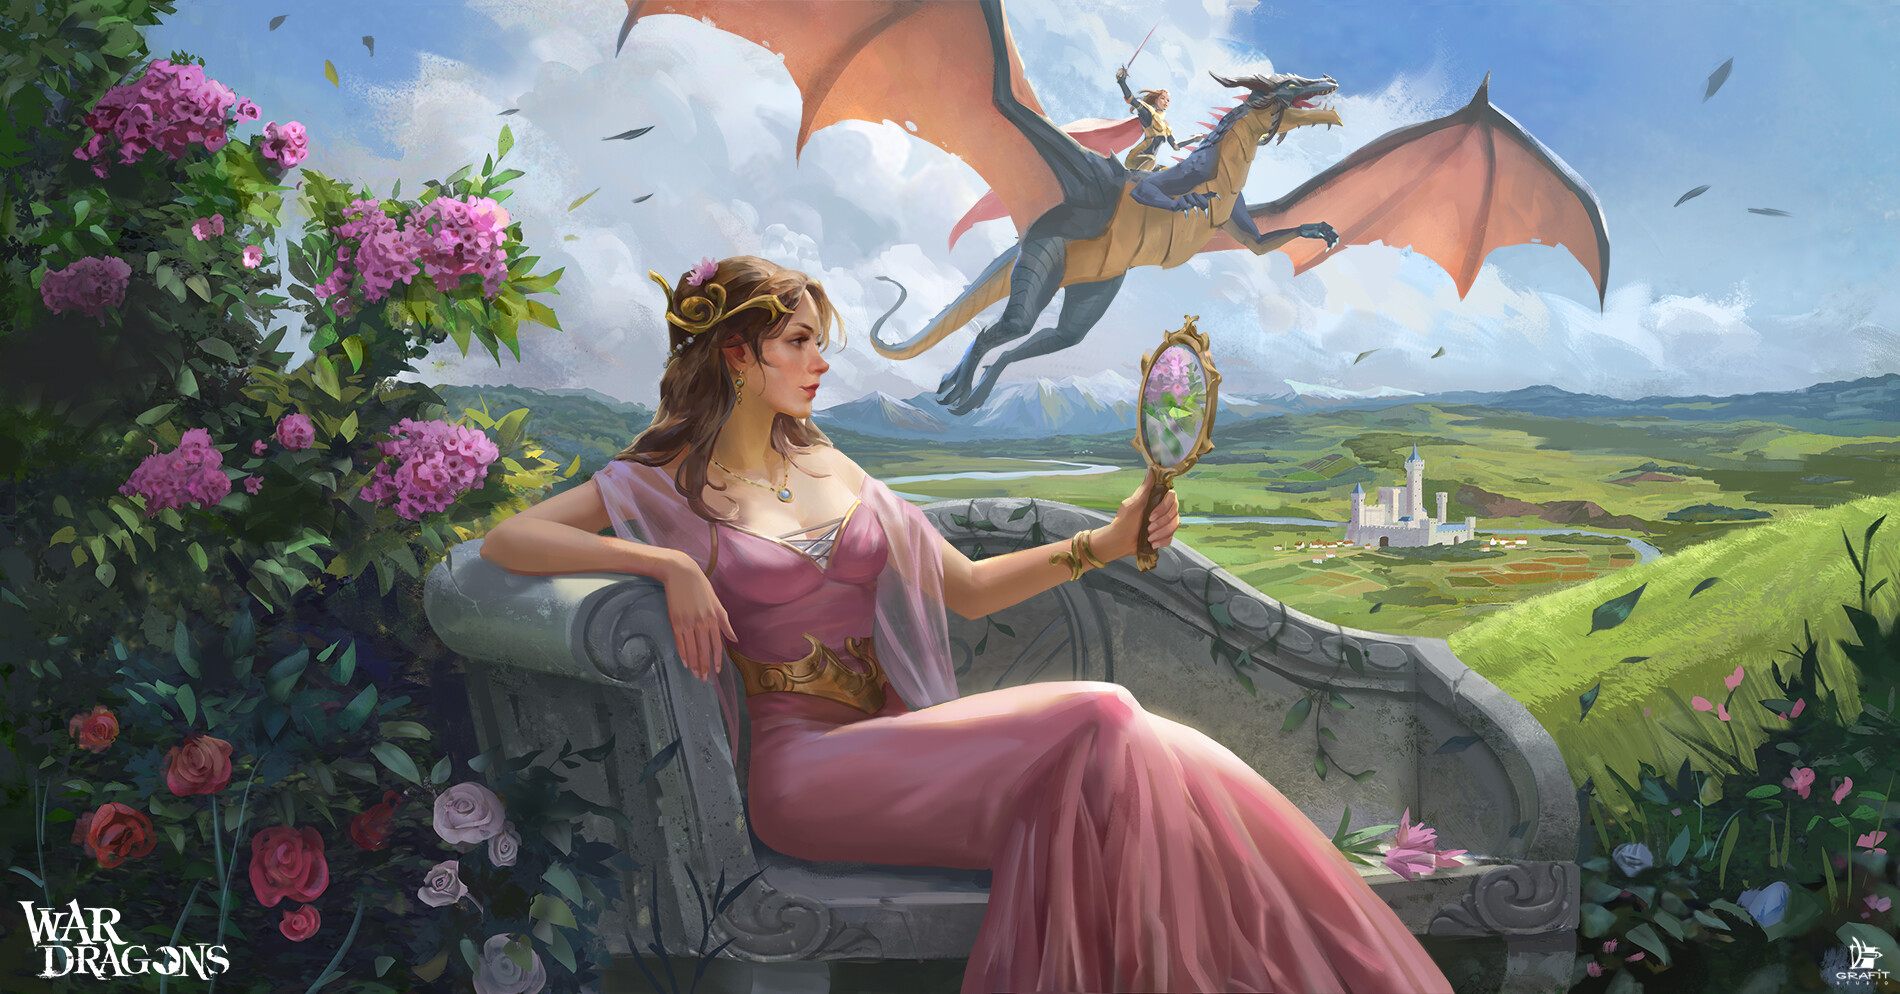 Artwork Fantasy Art Women Dragon Castle Landscape Field Farm Flying Mirror Dress Pink Dress Tiaras F 1900x994